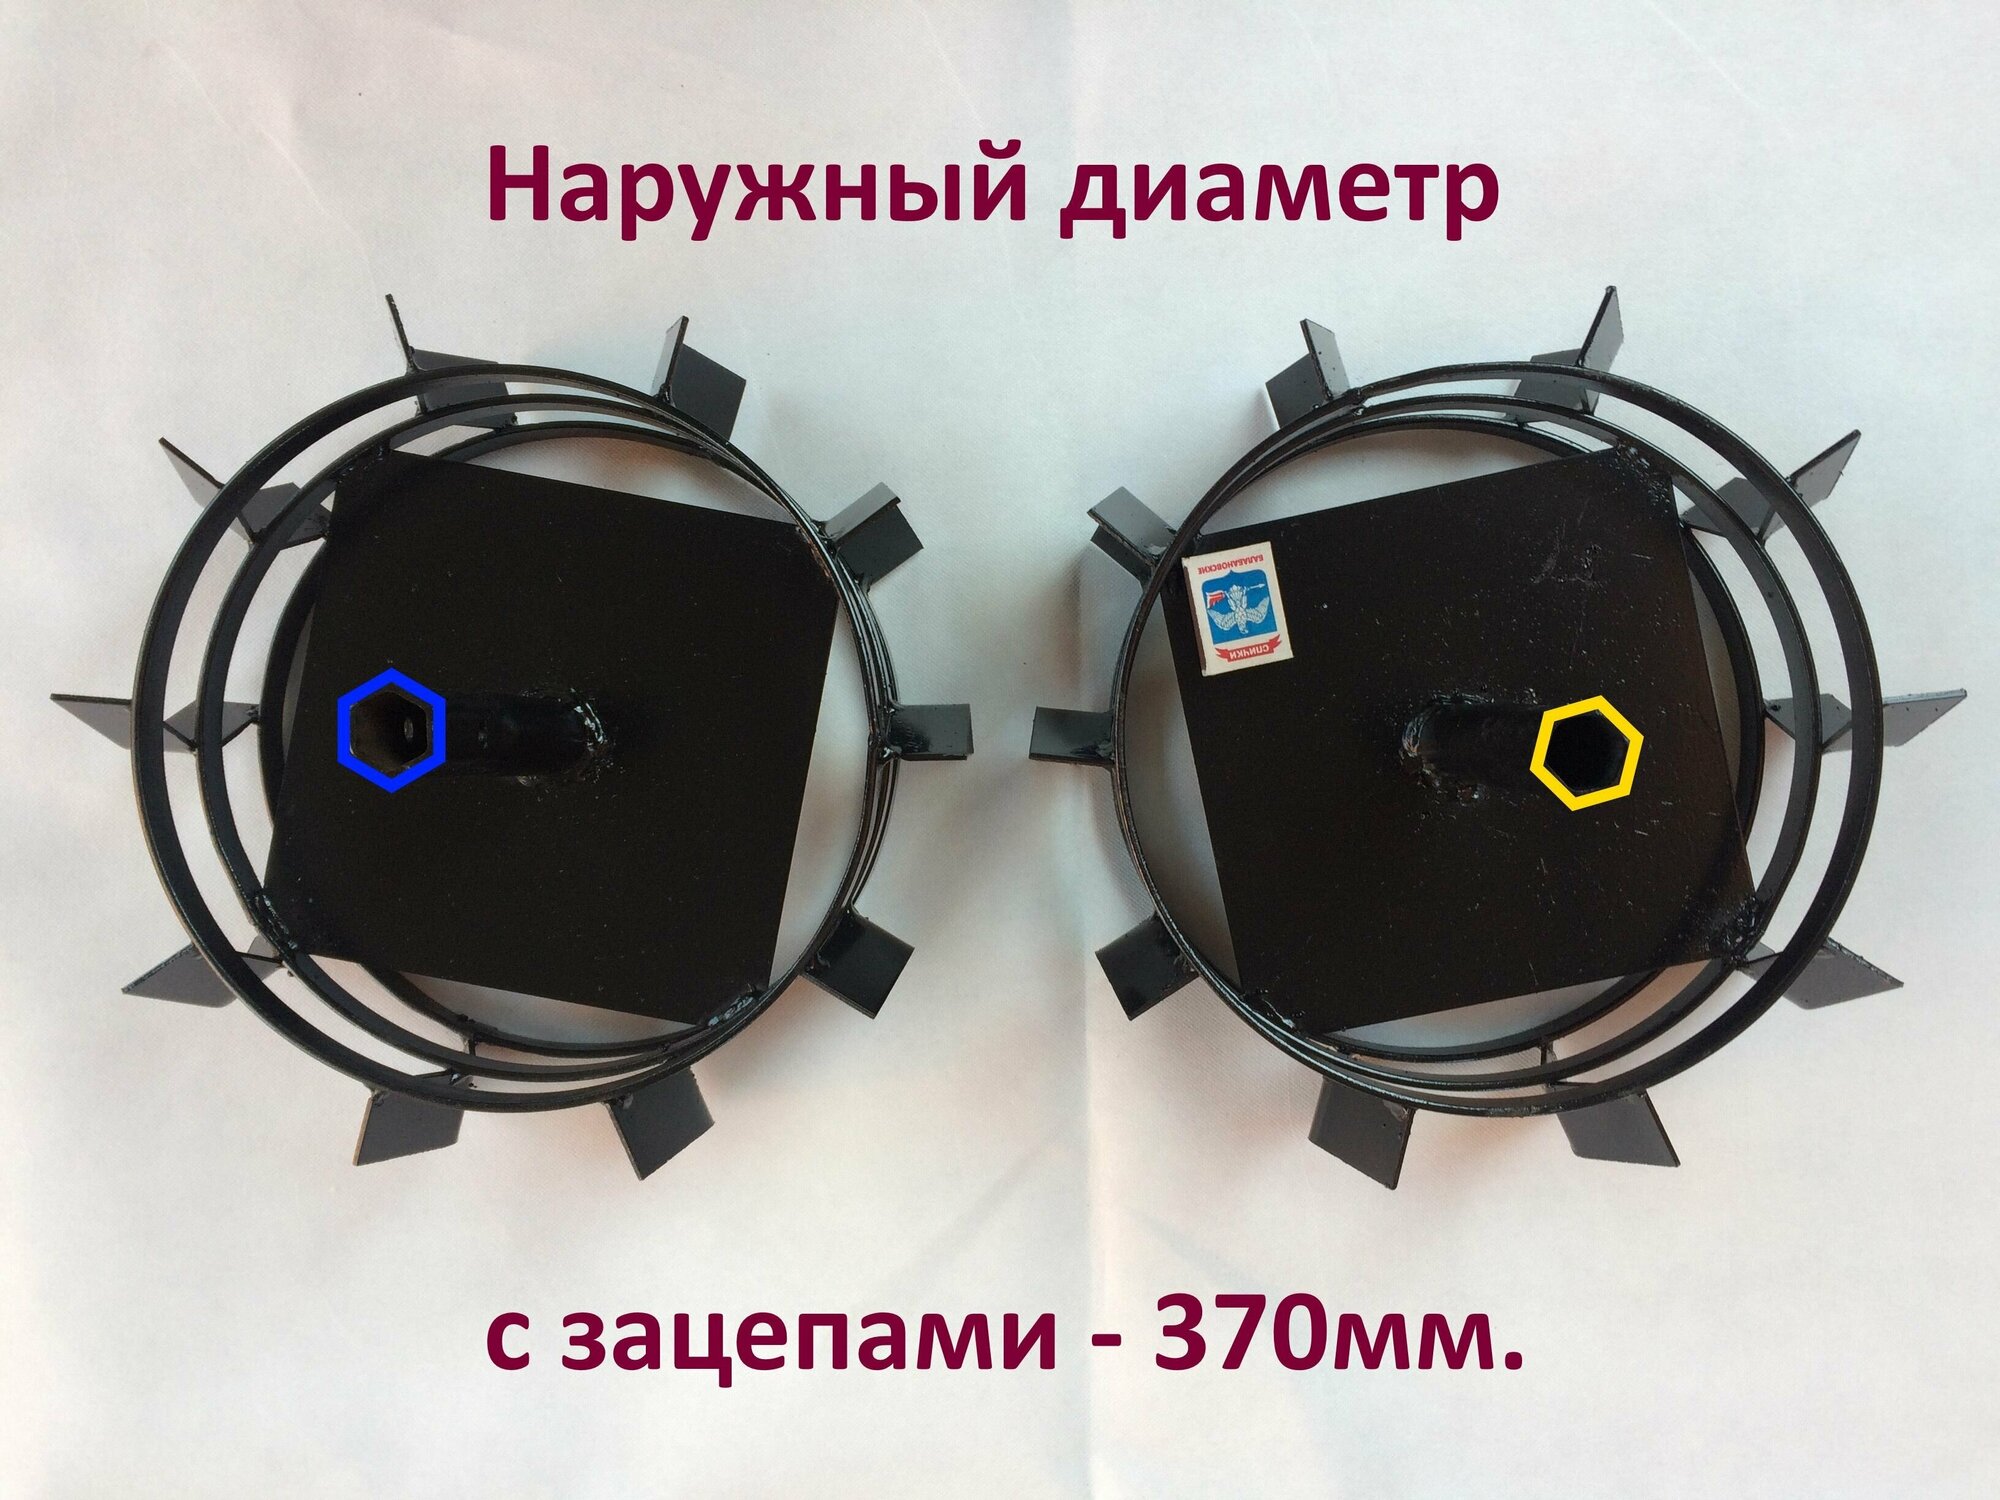 Грунтозацепы (колеса металлические) универсальные под шестигранник Посадочный размер - 23мм Наружный диаметр - 370мм Сделаны на Кубани